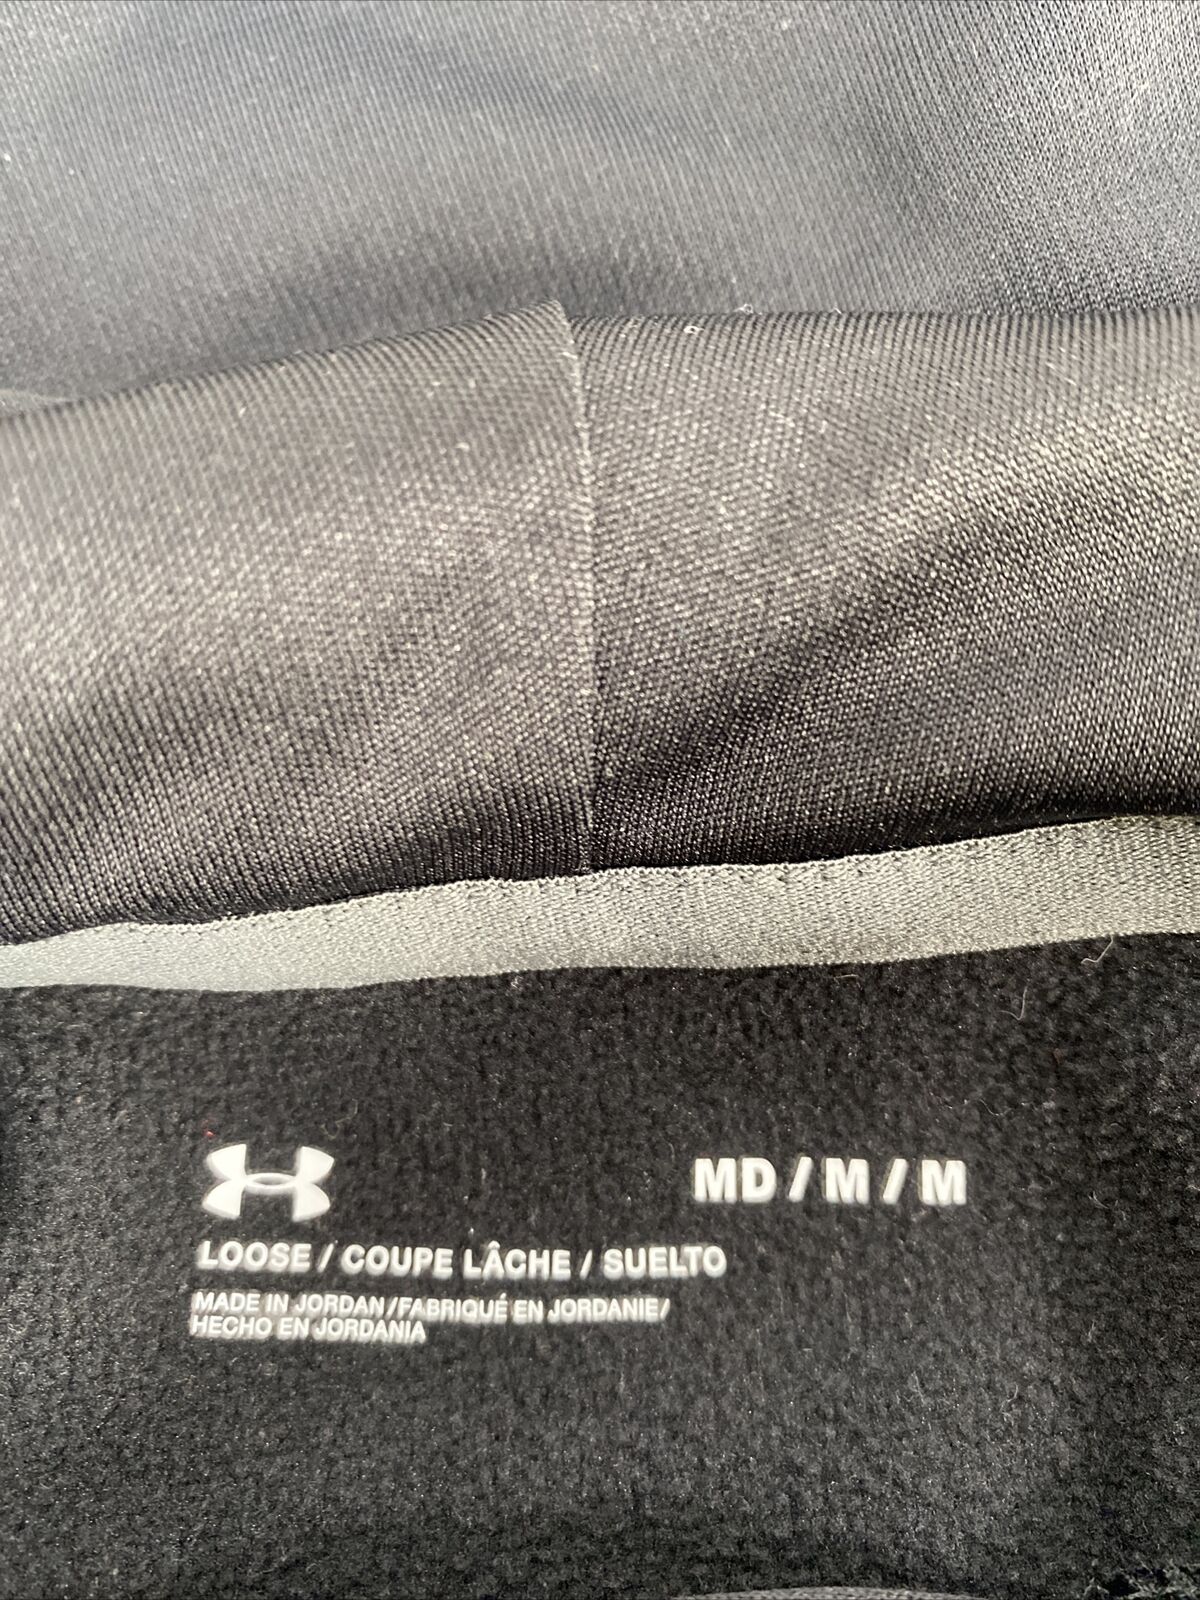 Under Armour Men's Black Big Logo Fleece Lined Hoodie Sweatshirt - M